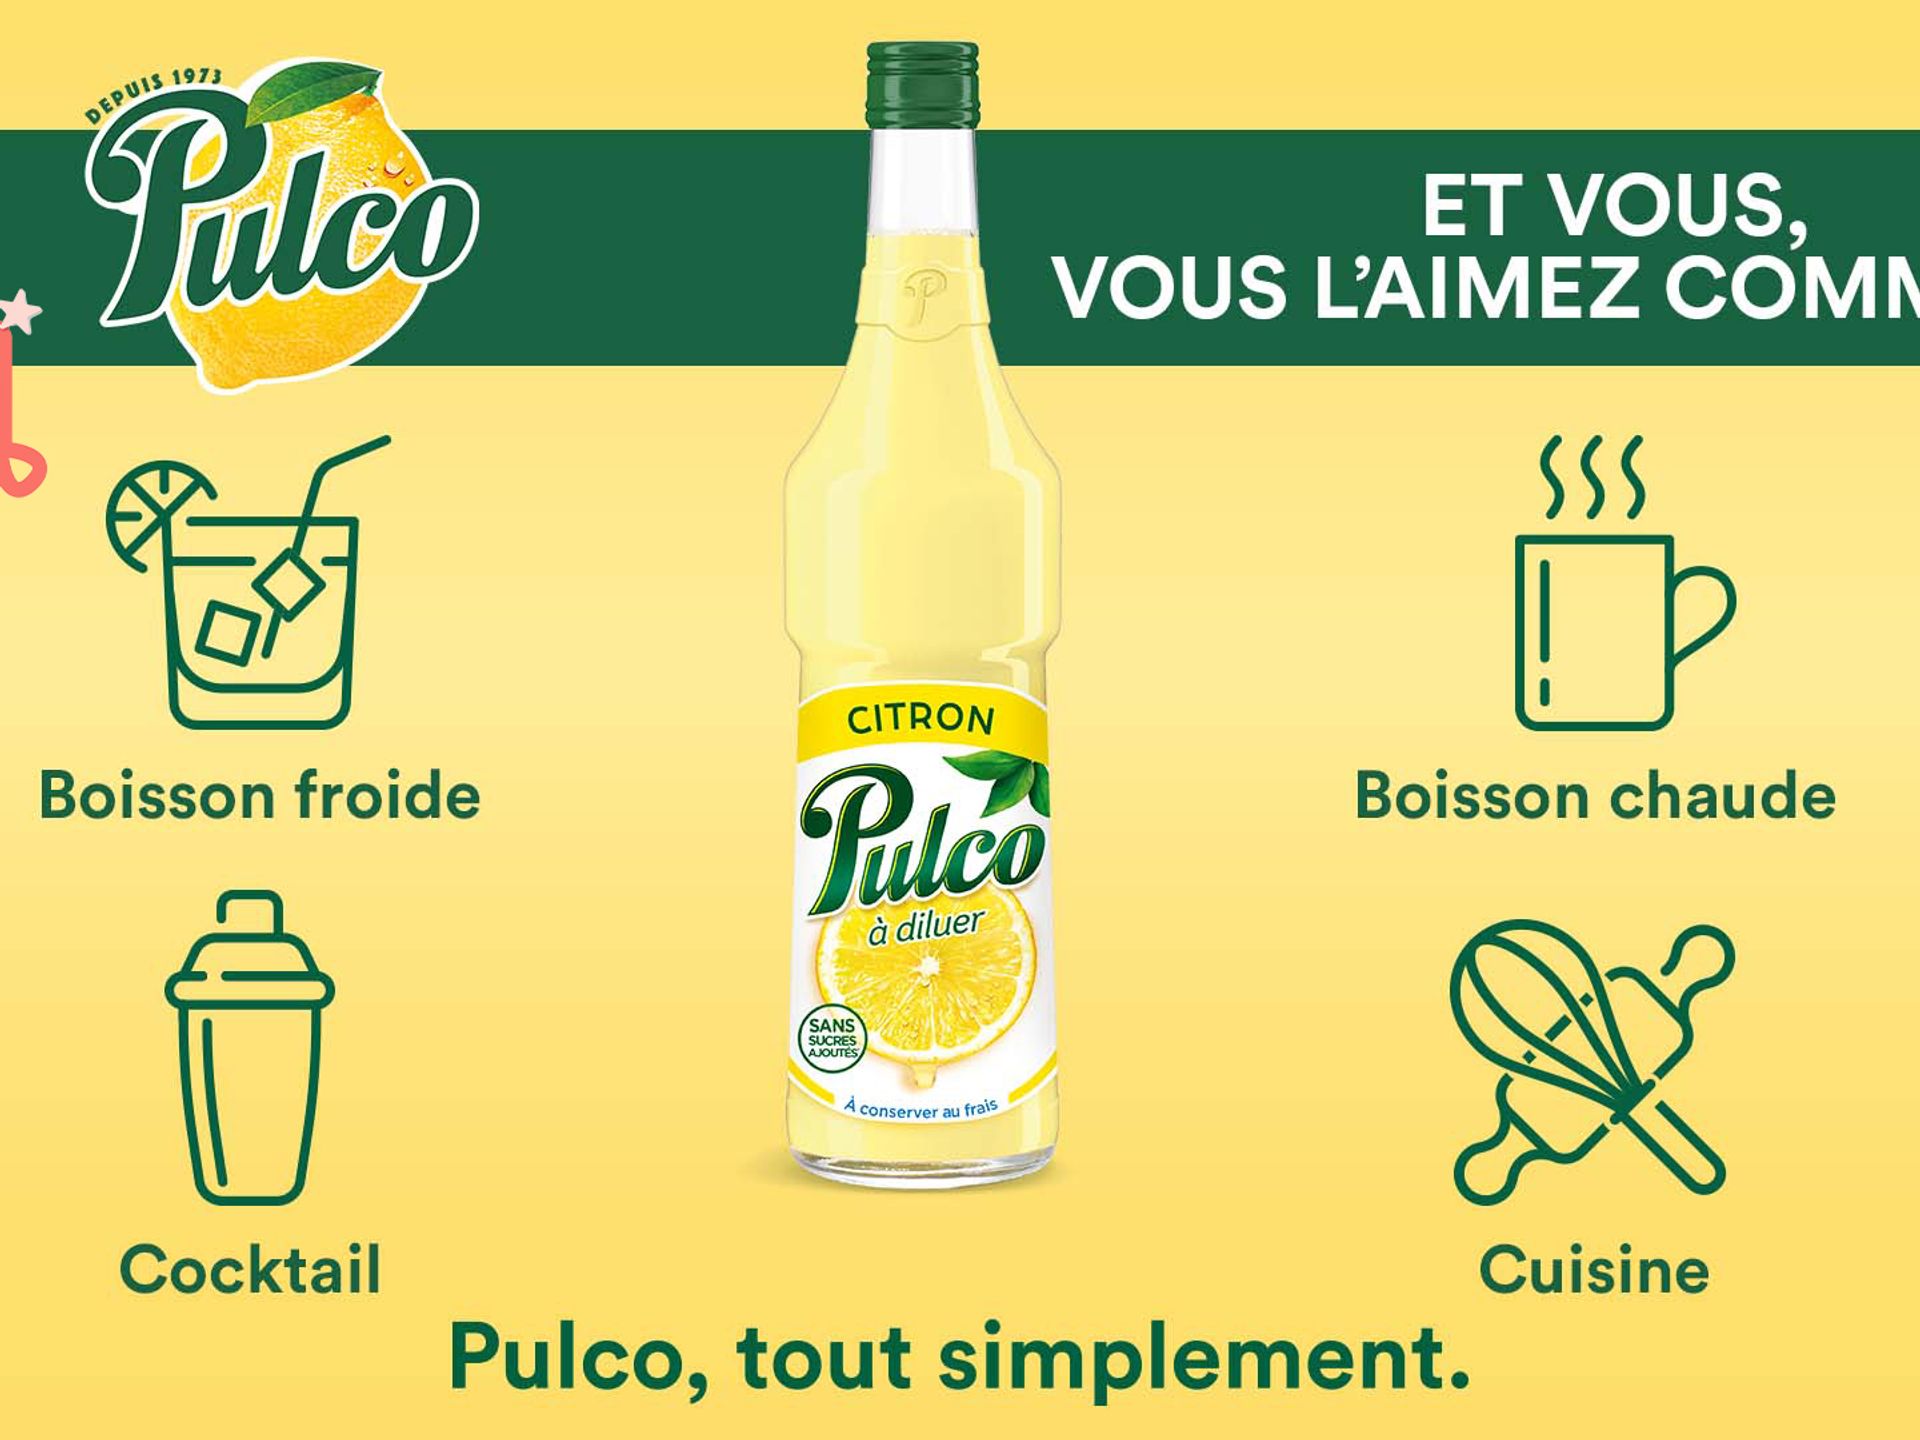 Préparez de nombreuses recettes avec Pulco Citron !